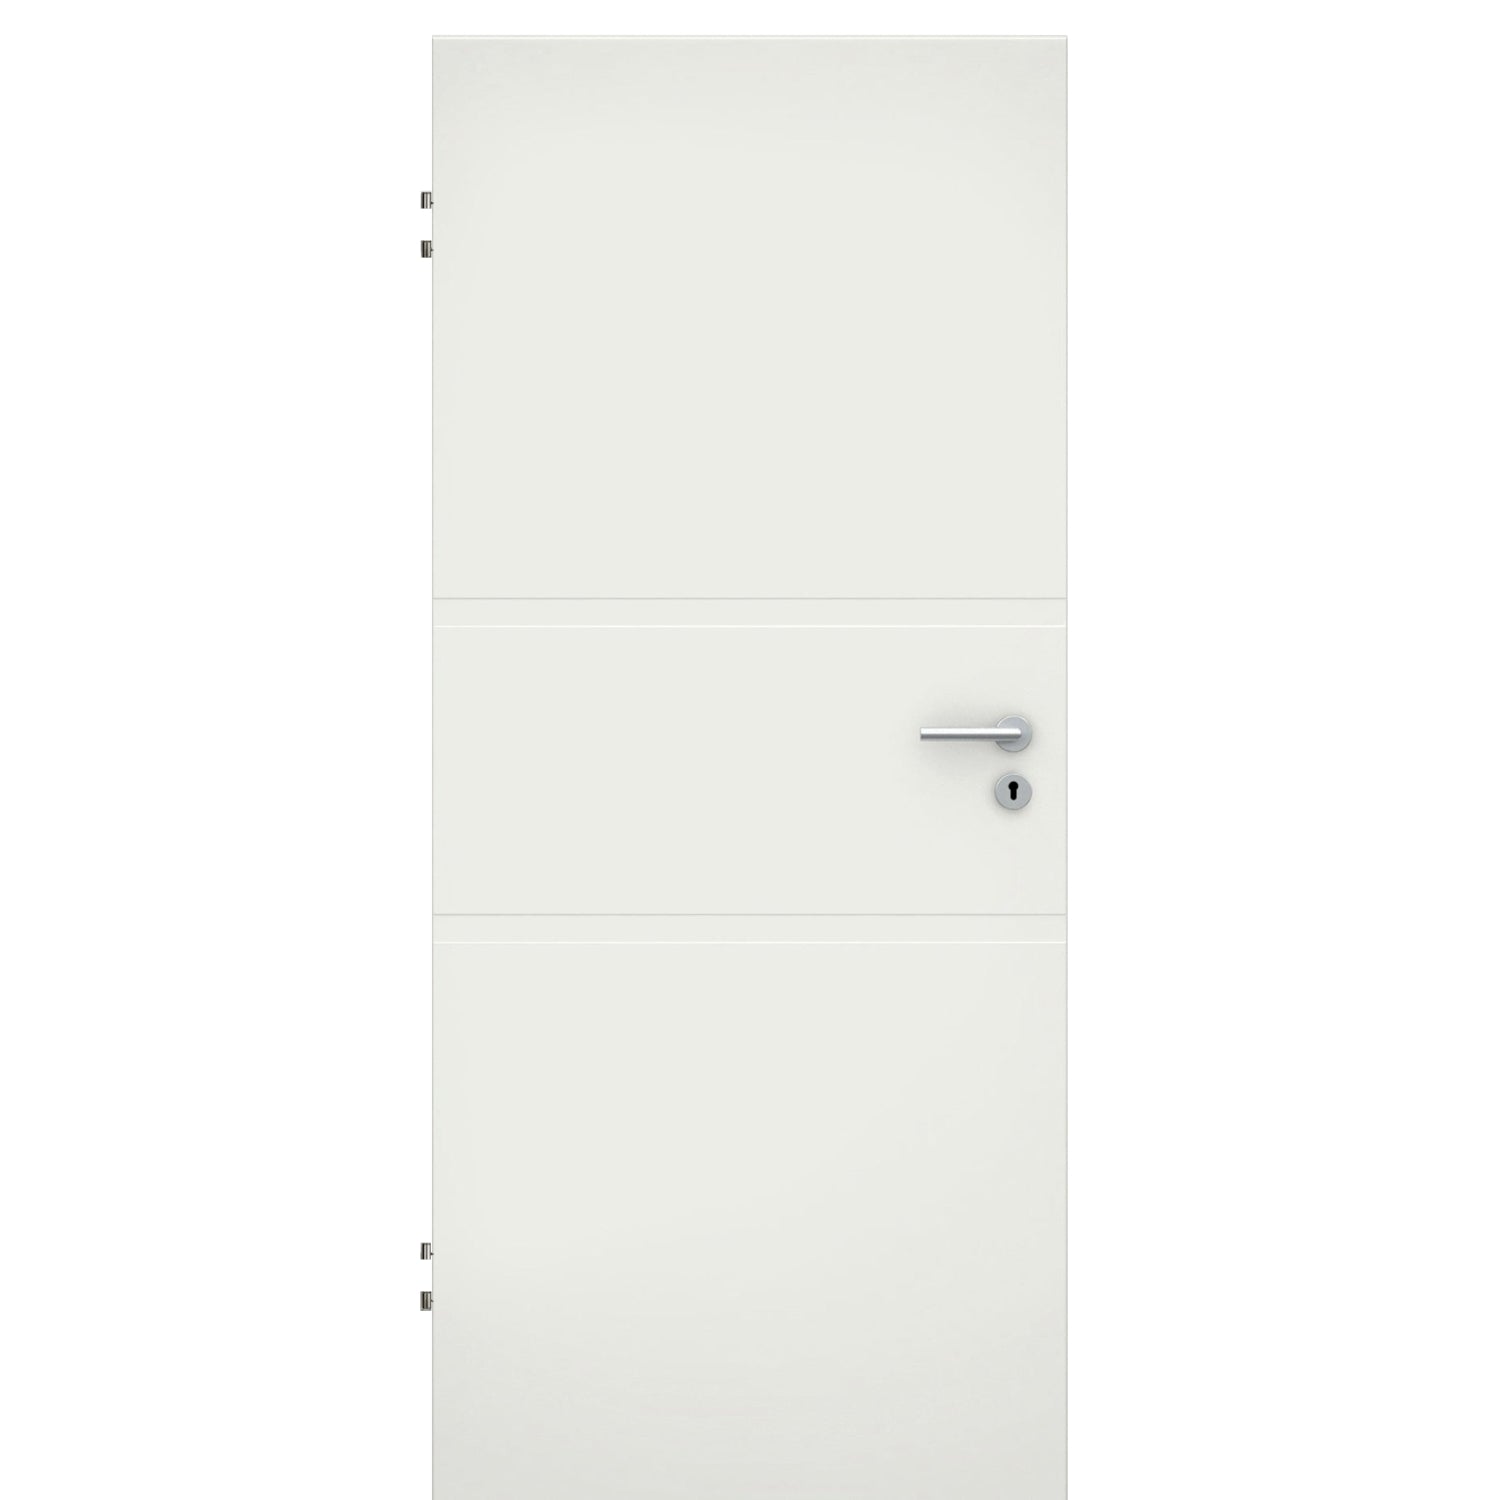 Wohnungseingangstür soft-weiß 2 breite Rillen Eckkante SK1 / KK3 - Modell Designtür QB21